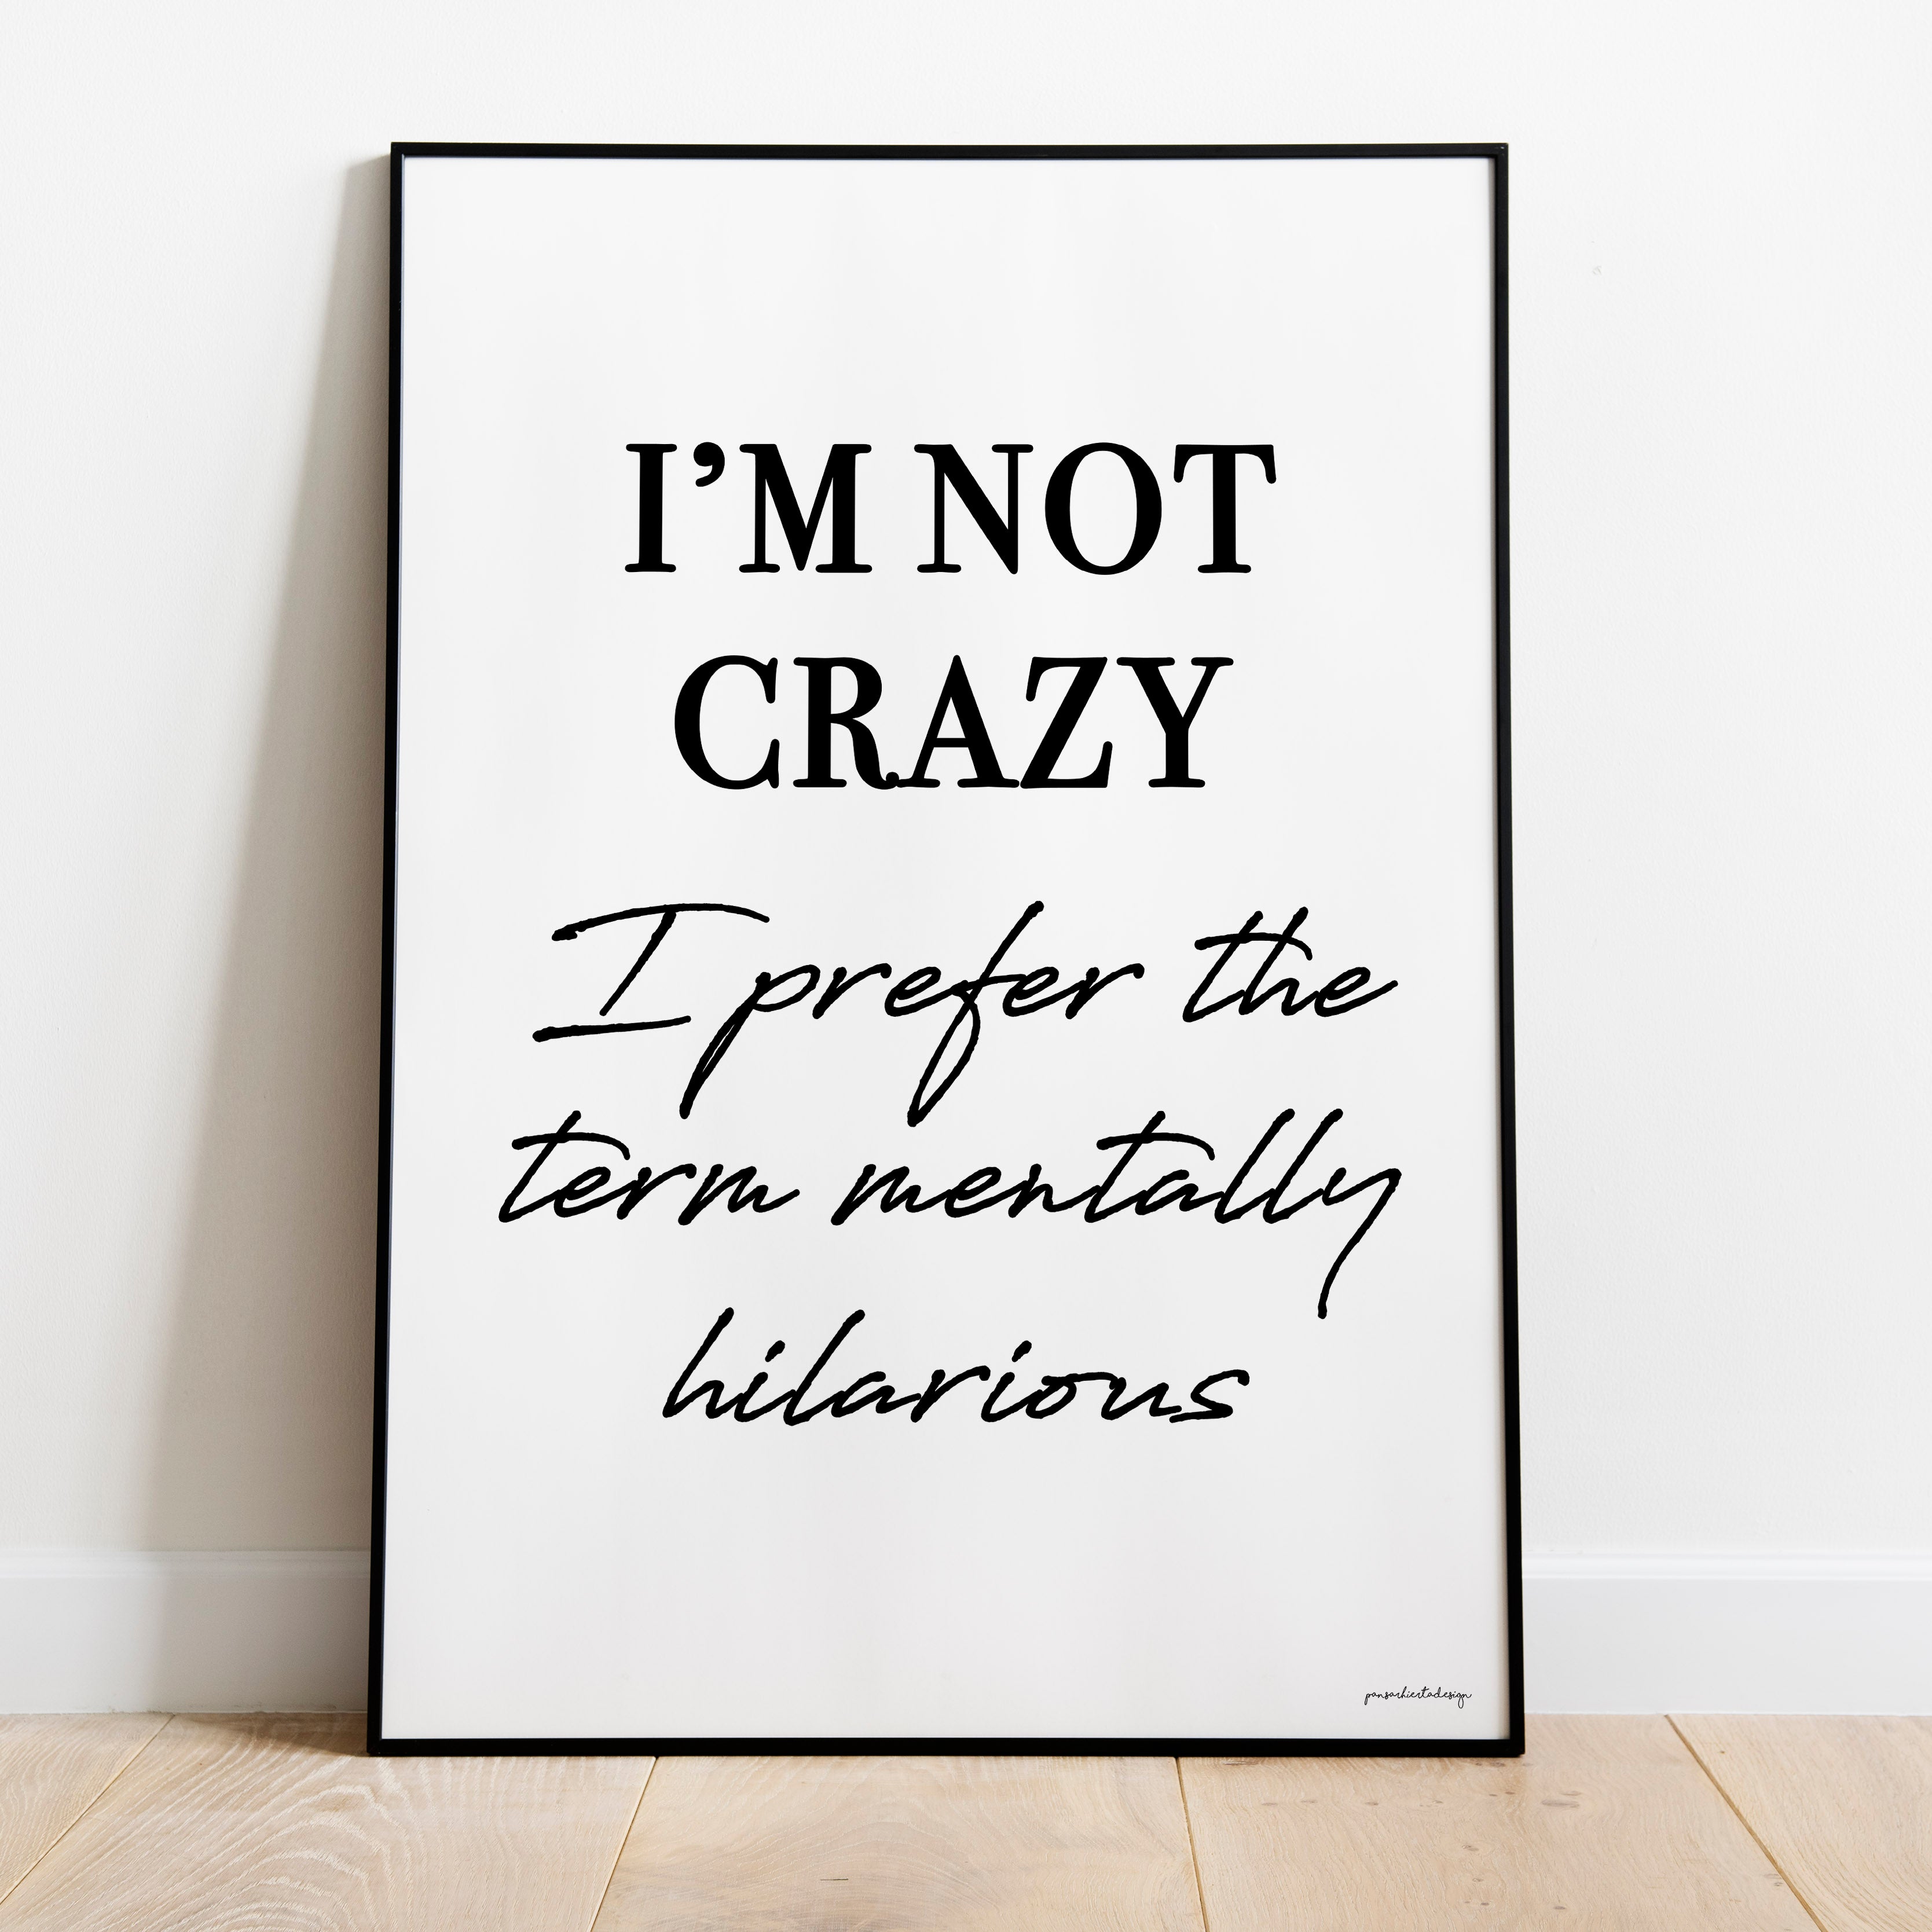 I'm not Crazy